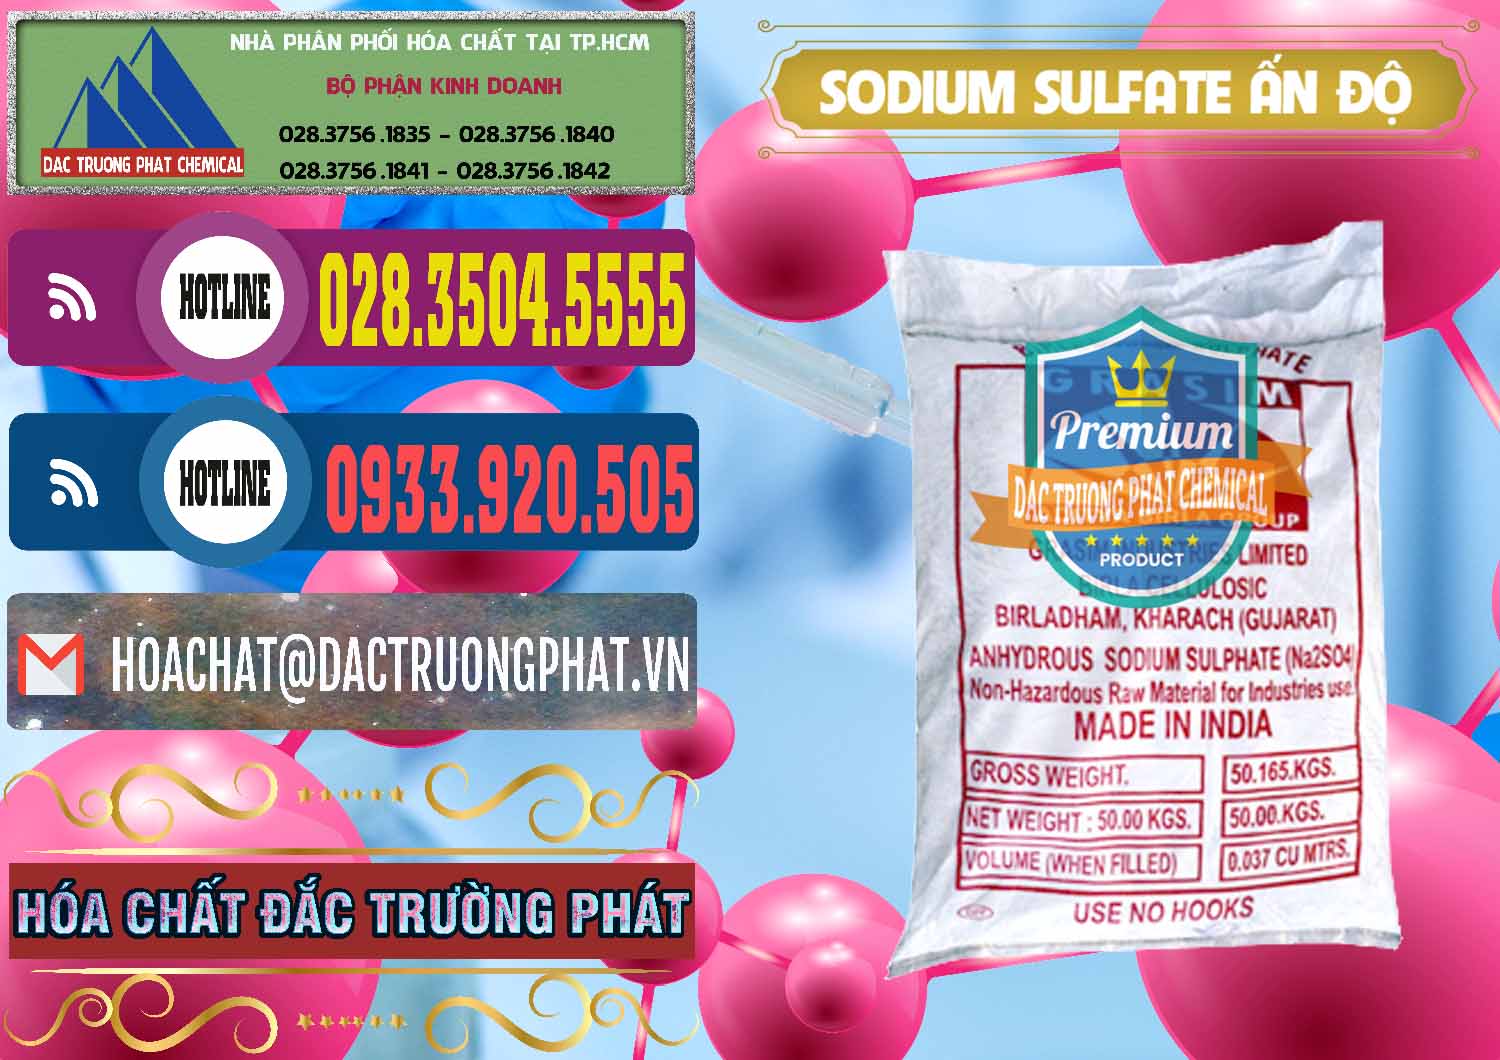 Cty chuyên bán & cung cấp Sodium Sulphate - Muối Sunfat Na2SO4 Aditya Birla Grasim Ấn Độ India - 0462 - Phân phối _ bán hóa chất tại TP.HCM - muabanhoachat.com.vn